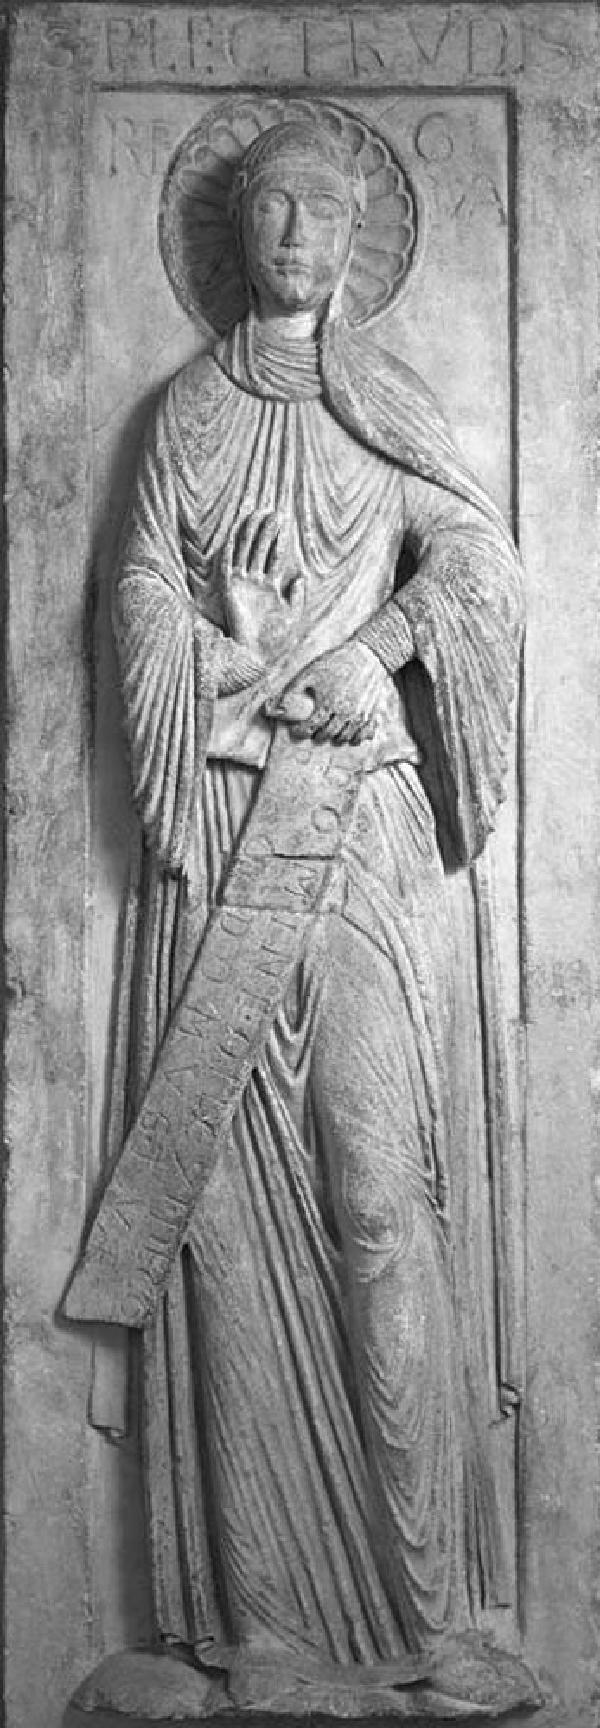 Liegefigur der Plektrud auf der romanischen Grabplatte in Sankt Maria im Kapitol in Köln, 1176/1200